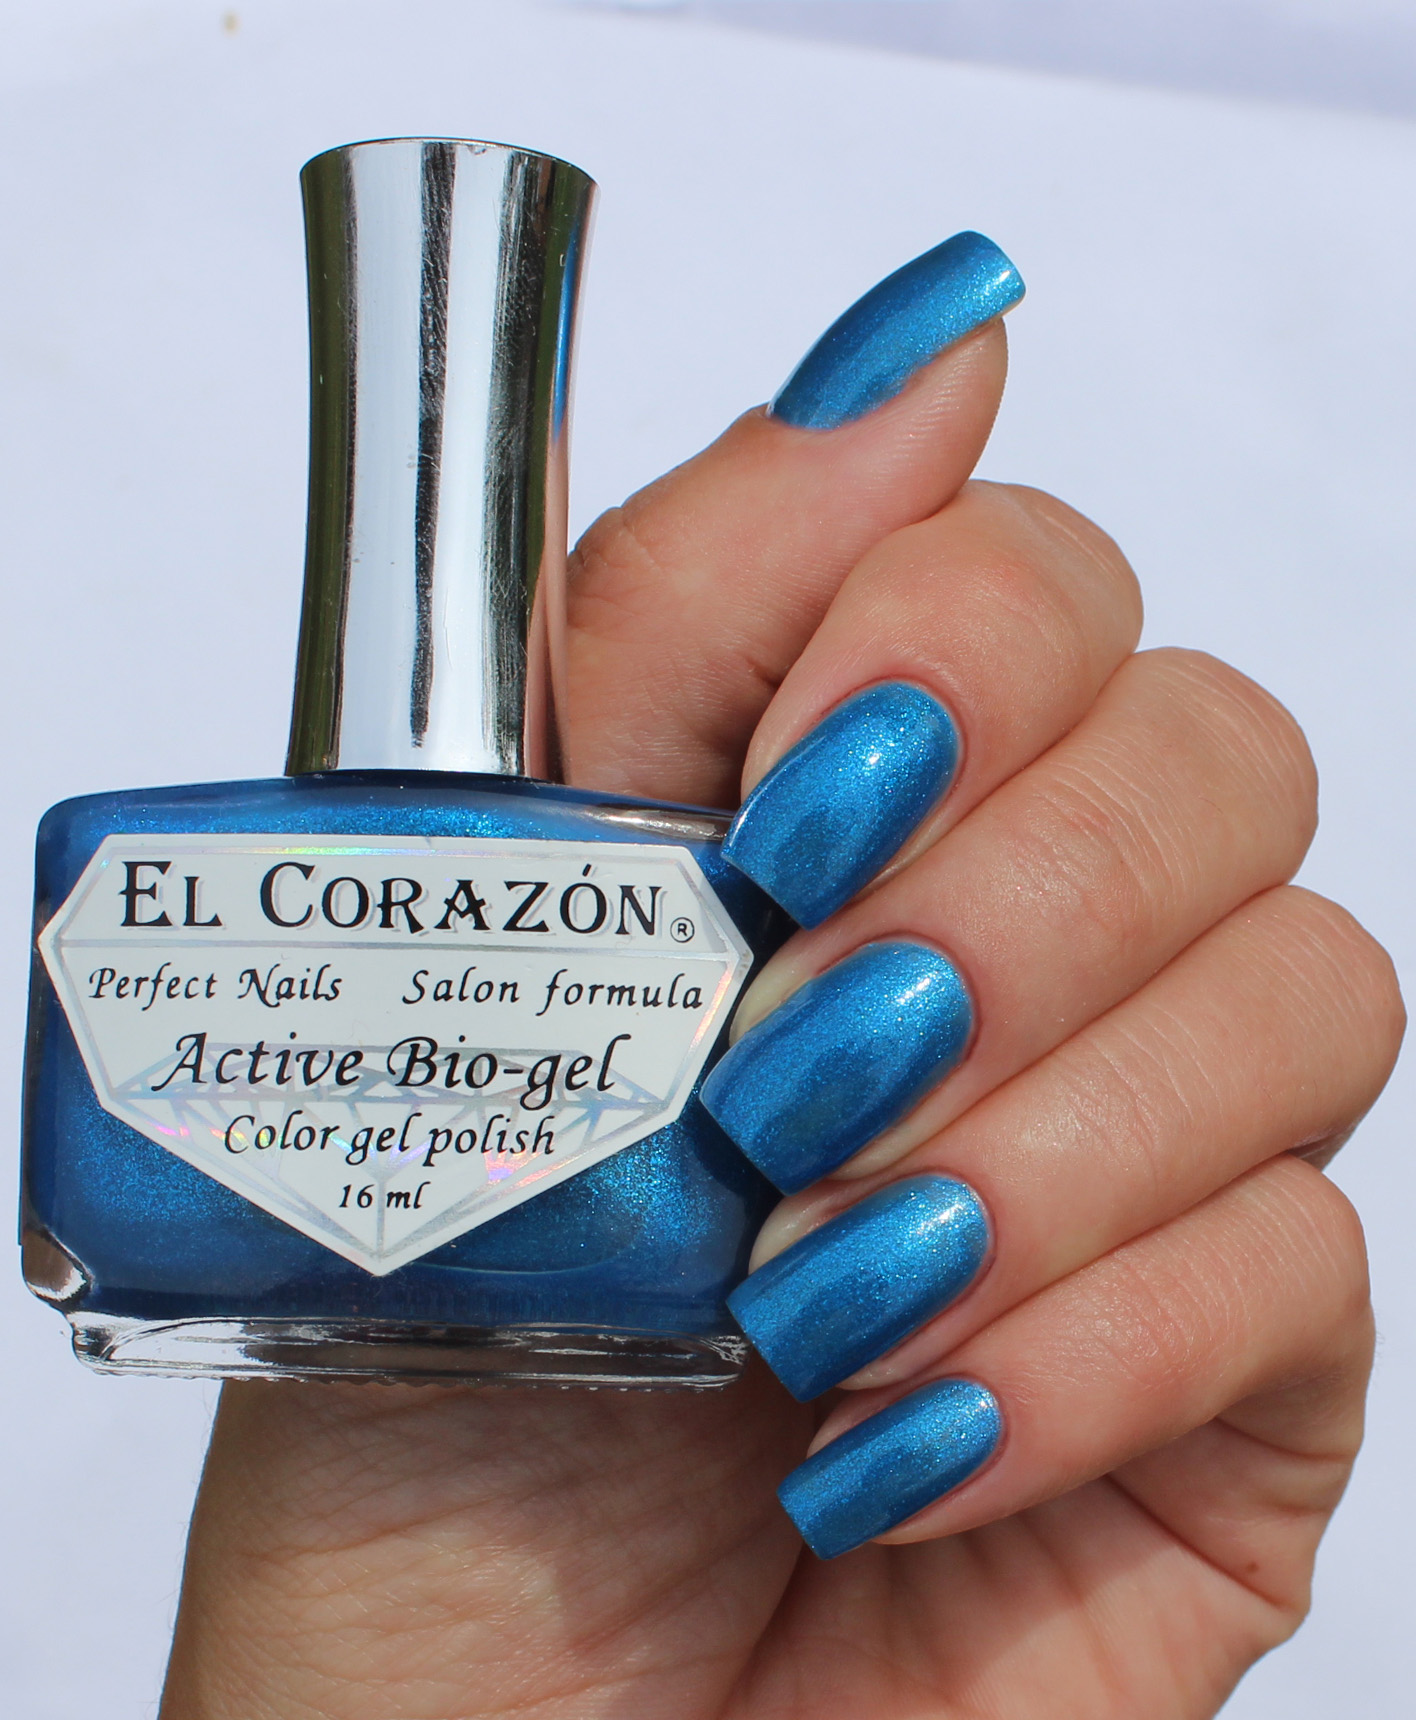 EL Corazon Active Bio-gel Color gel polish Magic №423/576 Magic Heart of Ocean